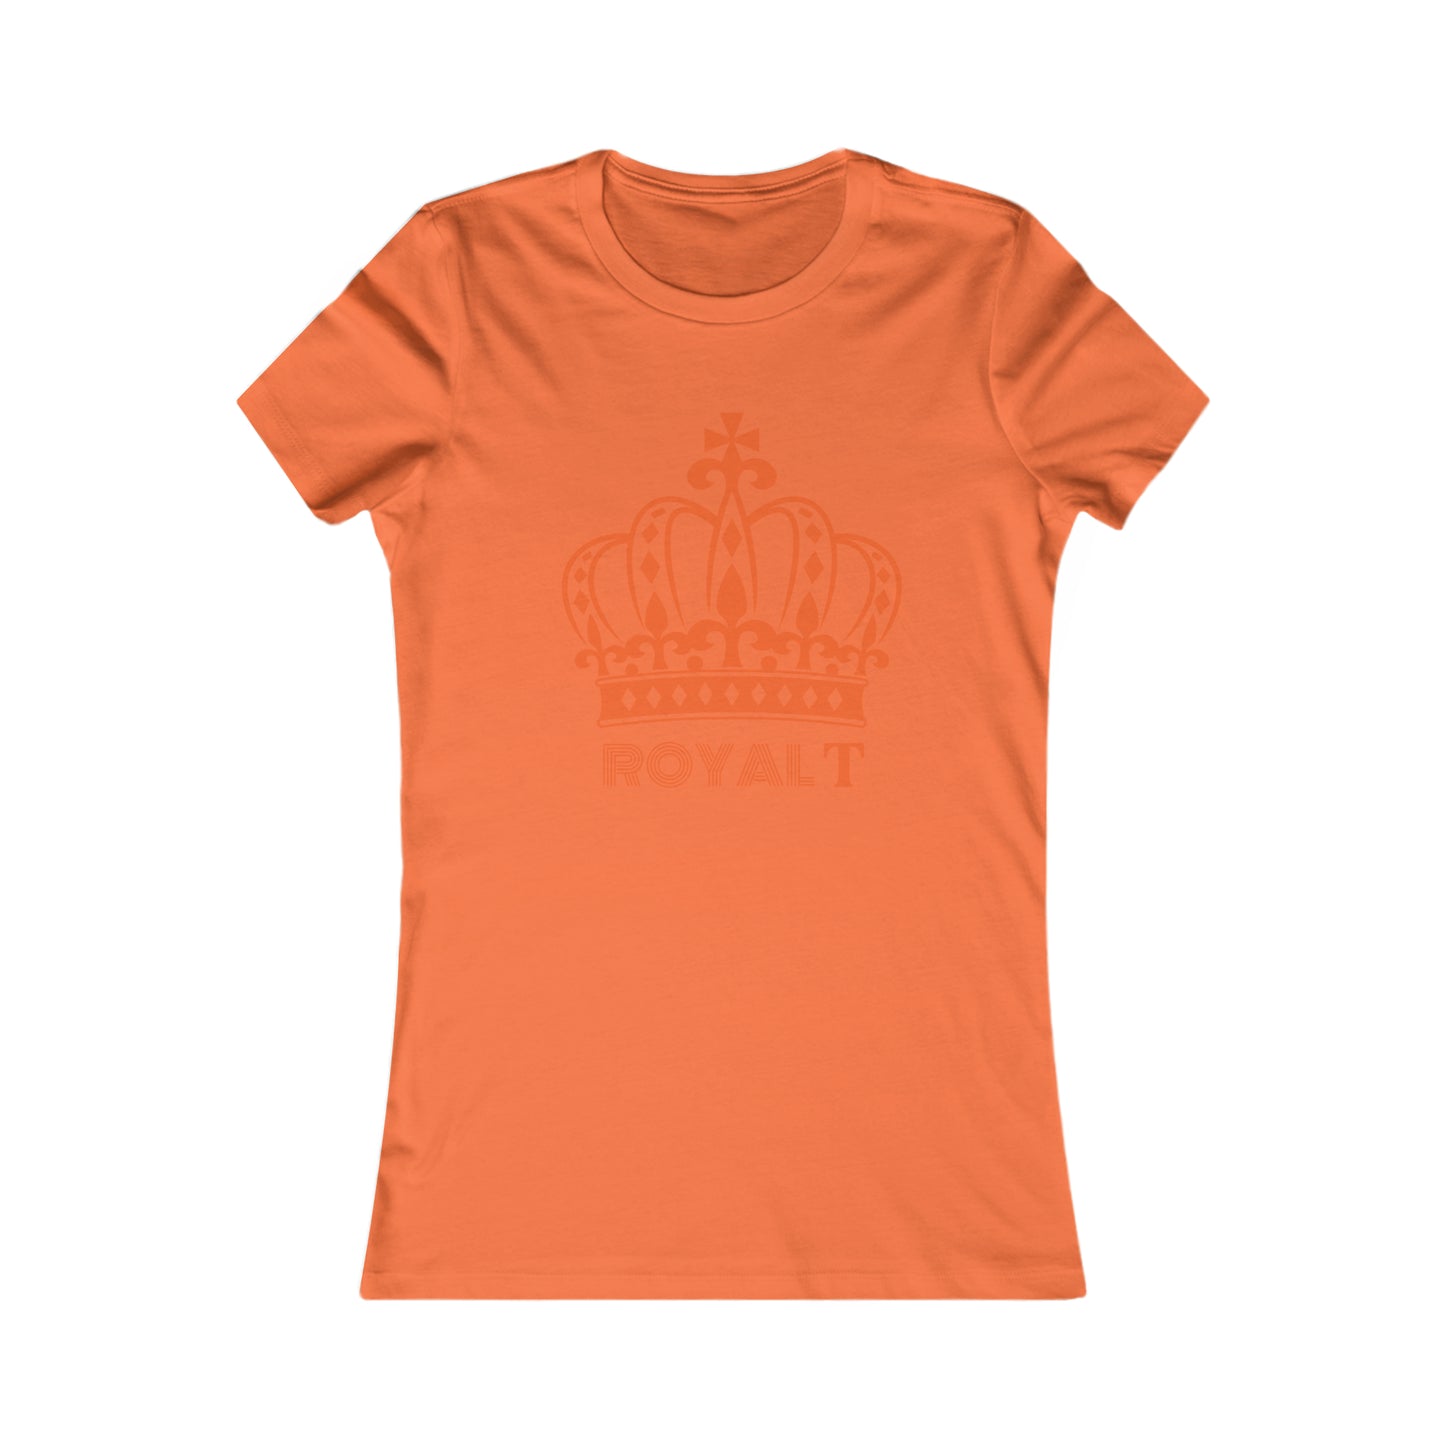 Orange - Women's Favorite T Shirt - Orange Royal T